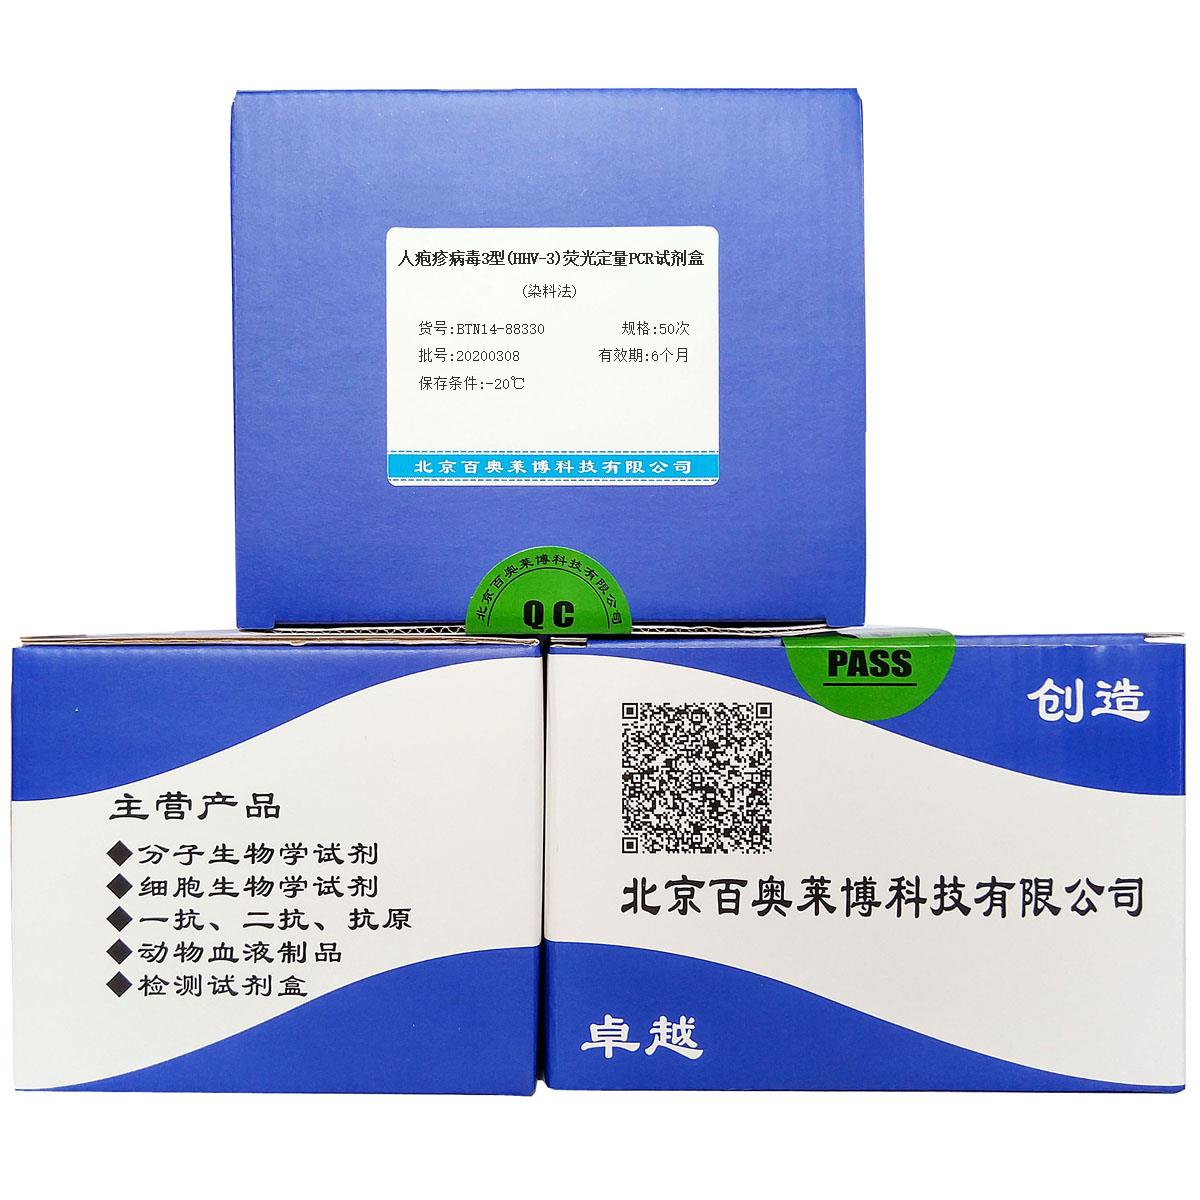 人疱疹病毒3型(HHV-3)荧光定量PCR试剂盒(染料法)